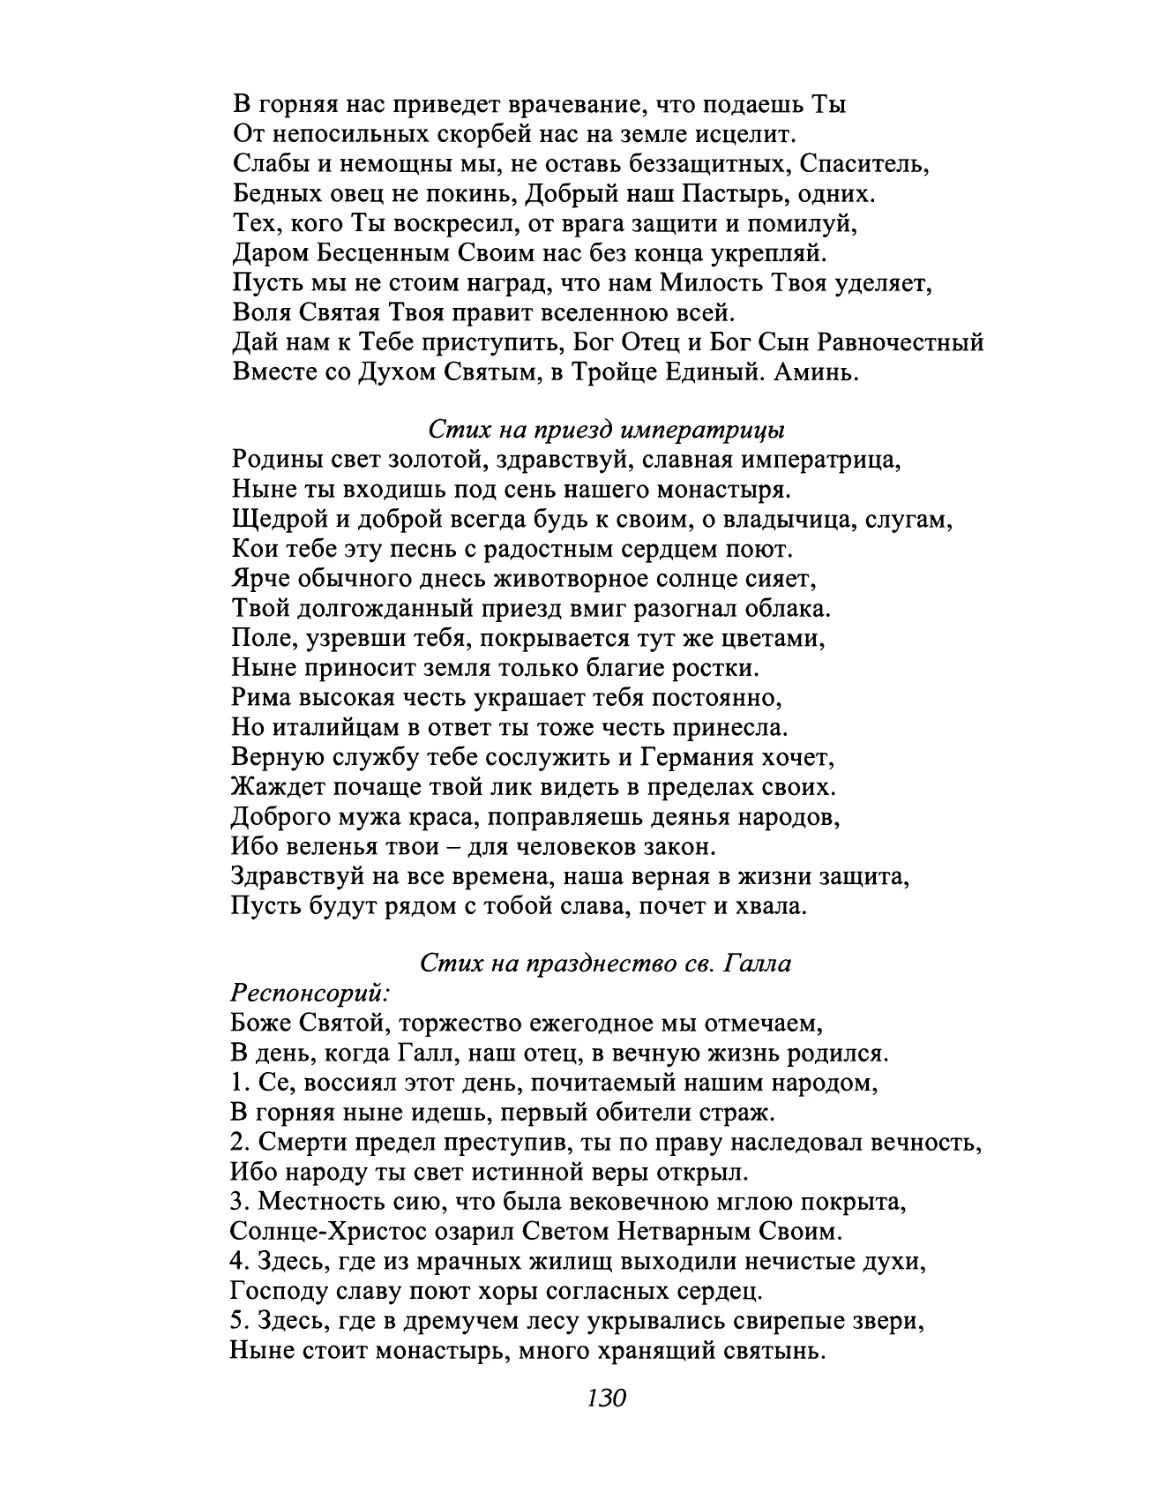 Стих на приезд императрицы
Стих на празднество св. Галла